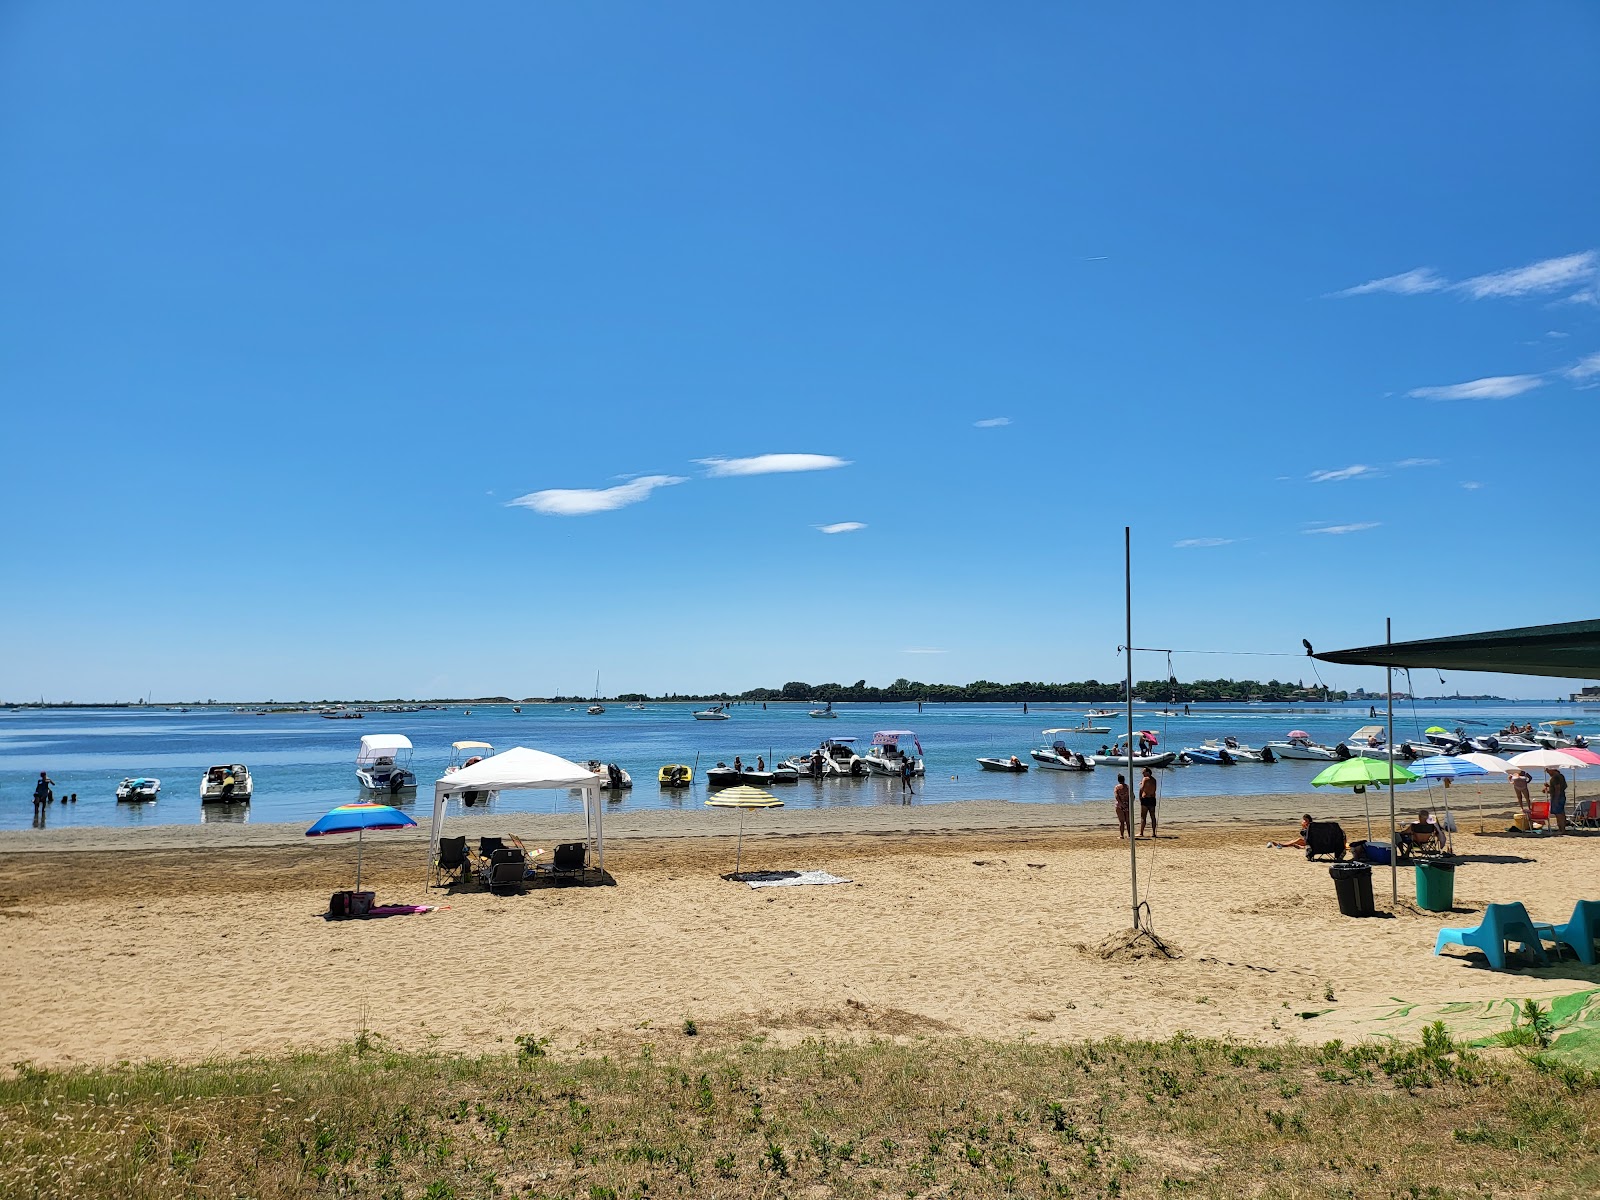 Spiaggia del Bacan'in fotoğrafı geniş plaj ile birlikte